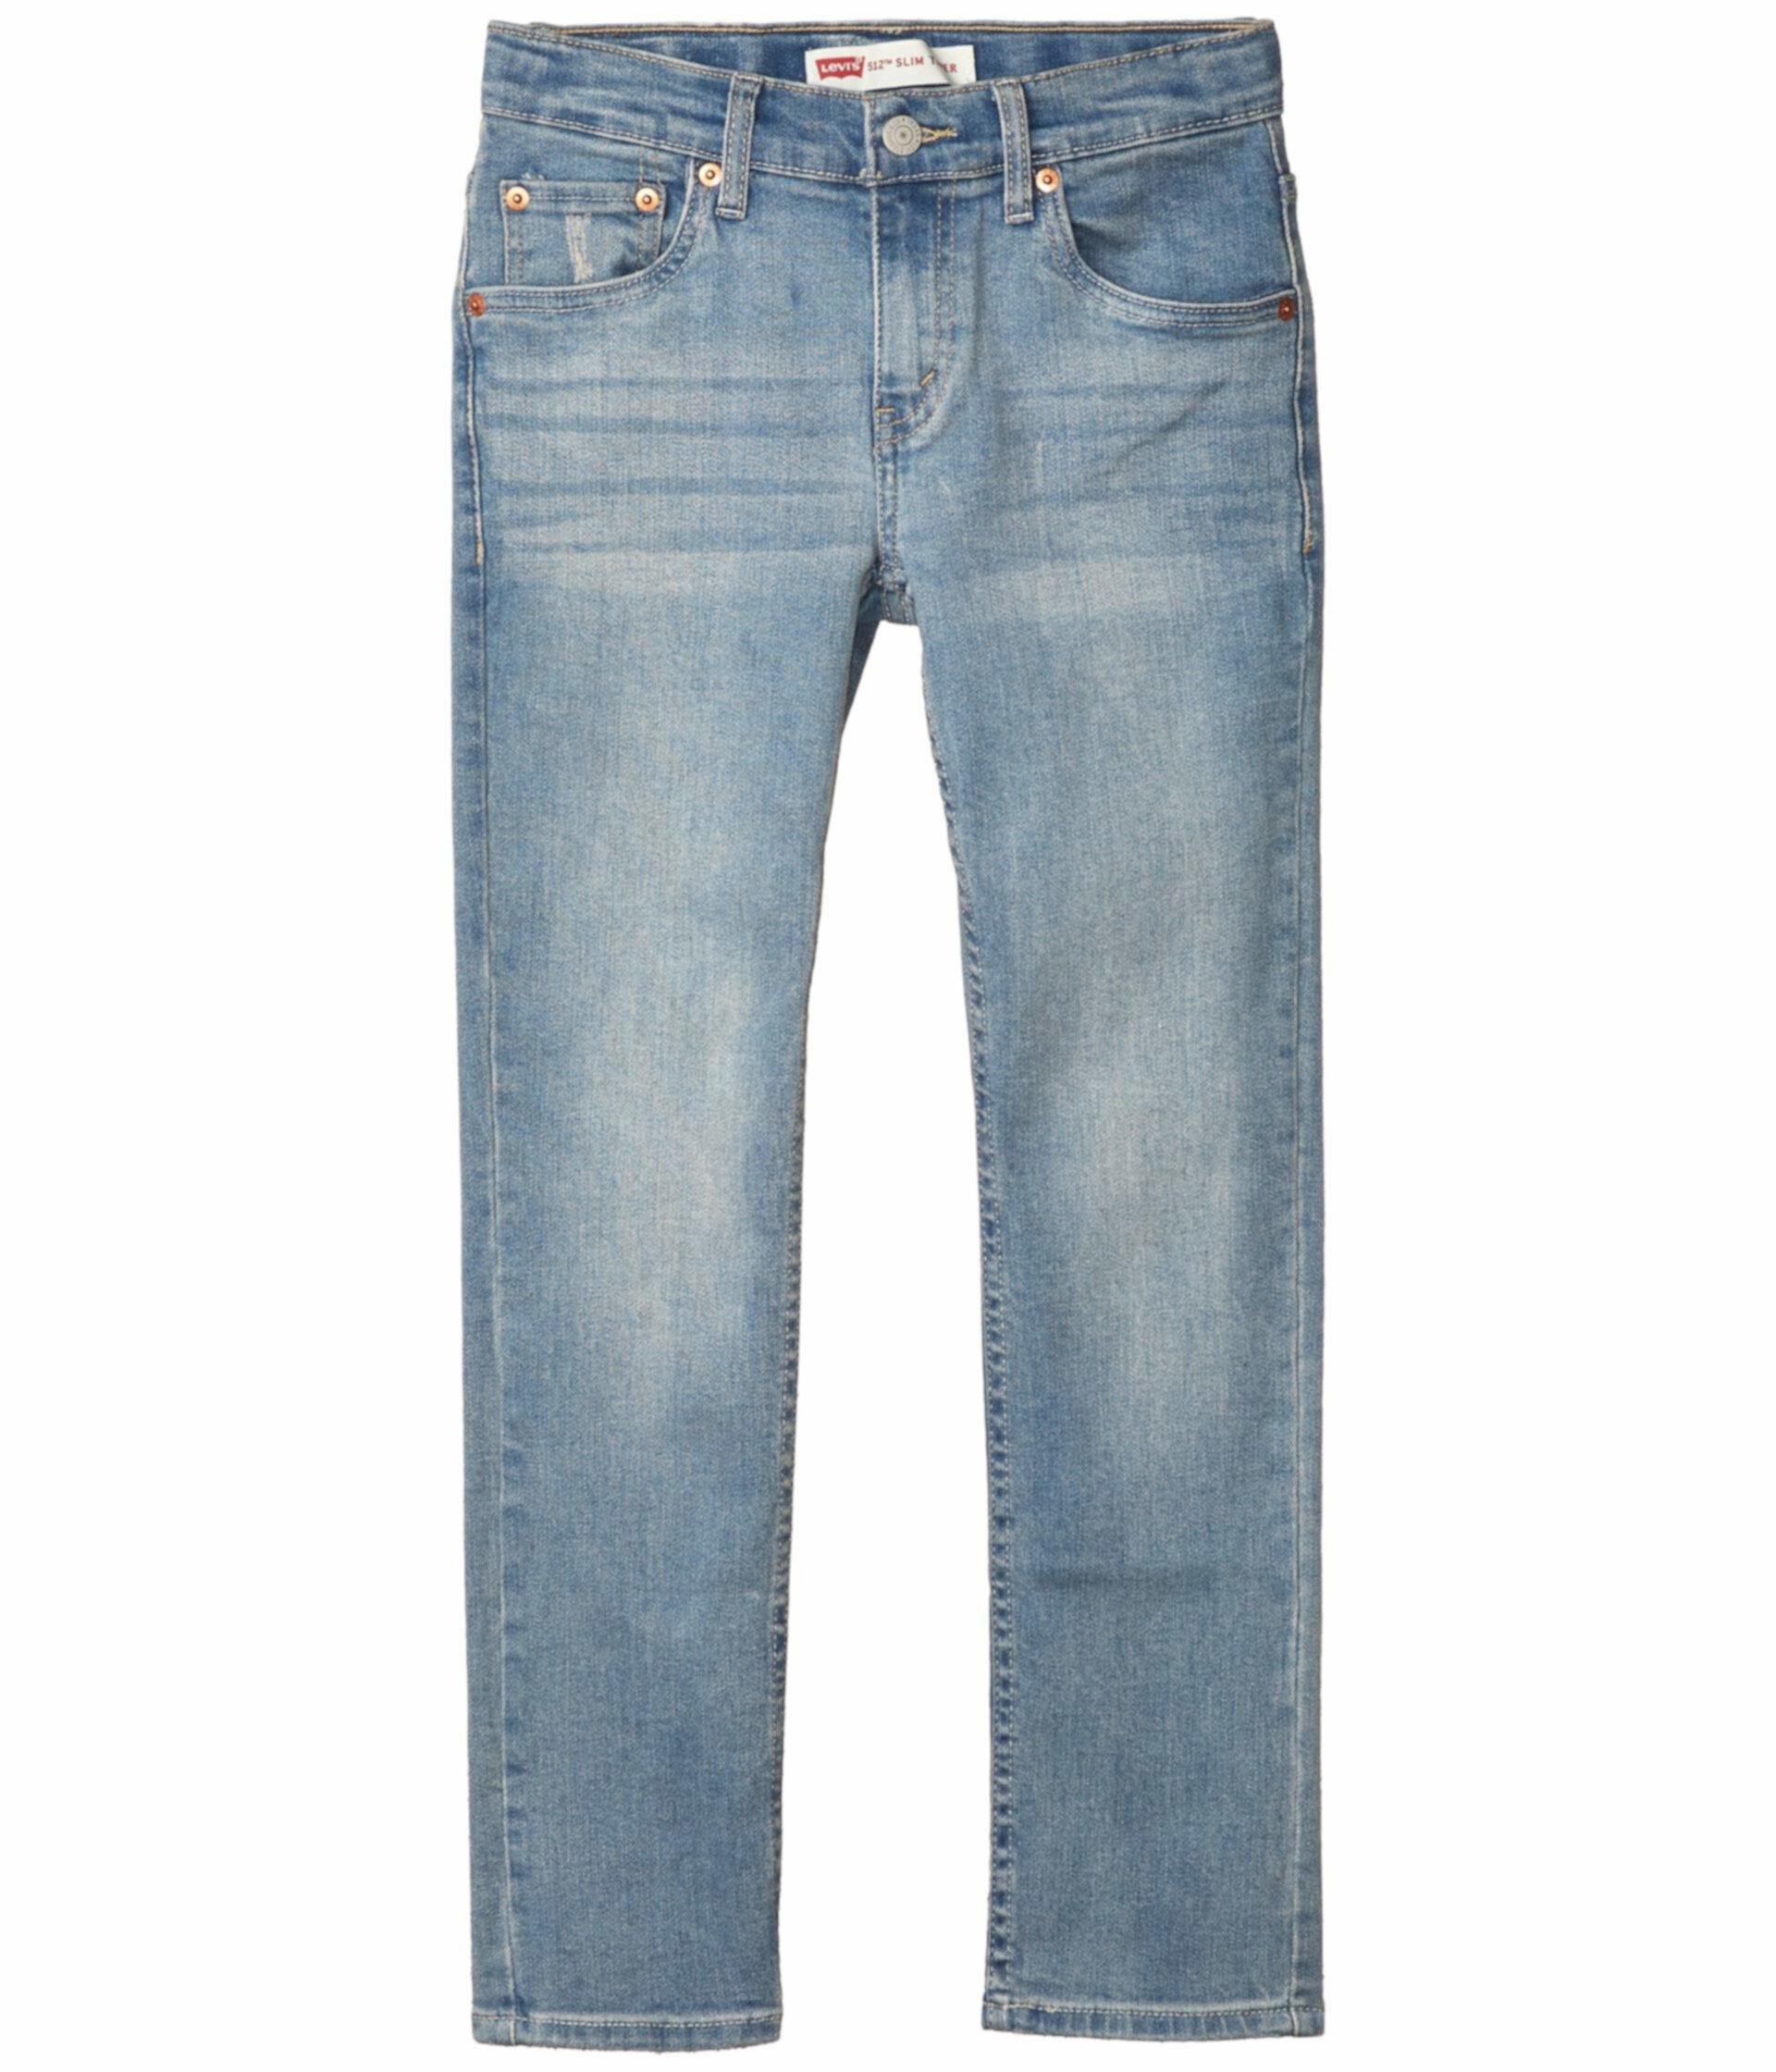 Узкие джинсы 512 Slim Fit (для больших детей) Levi's®